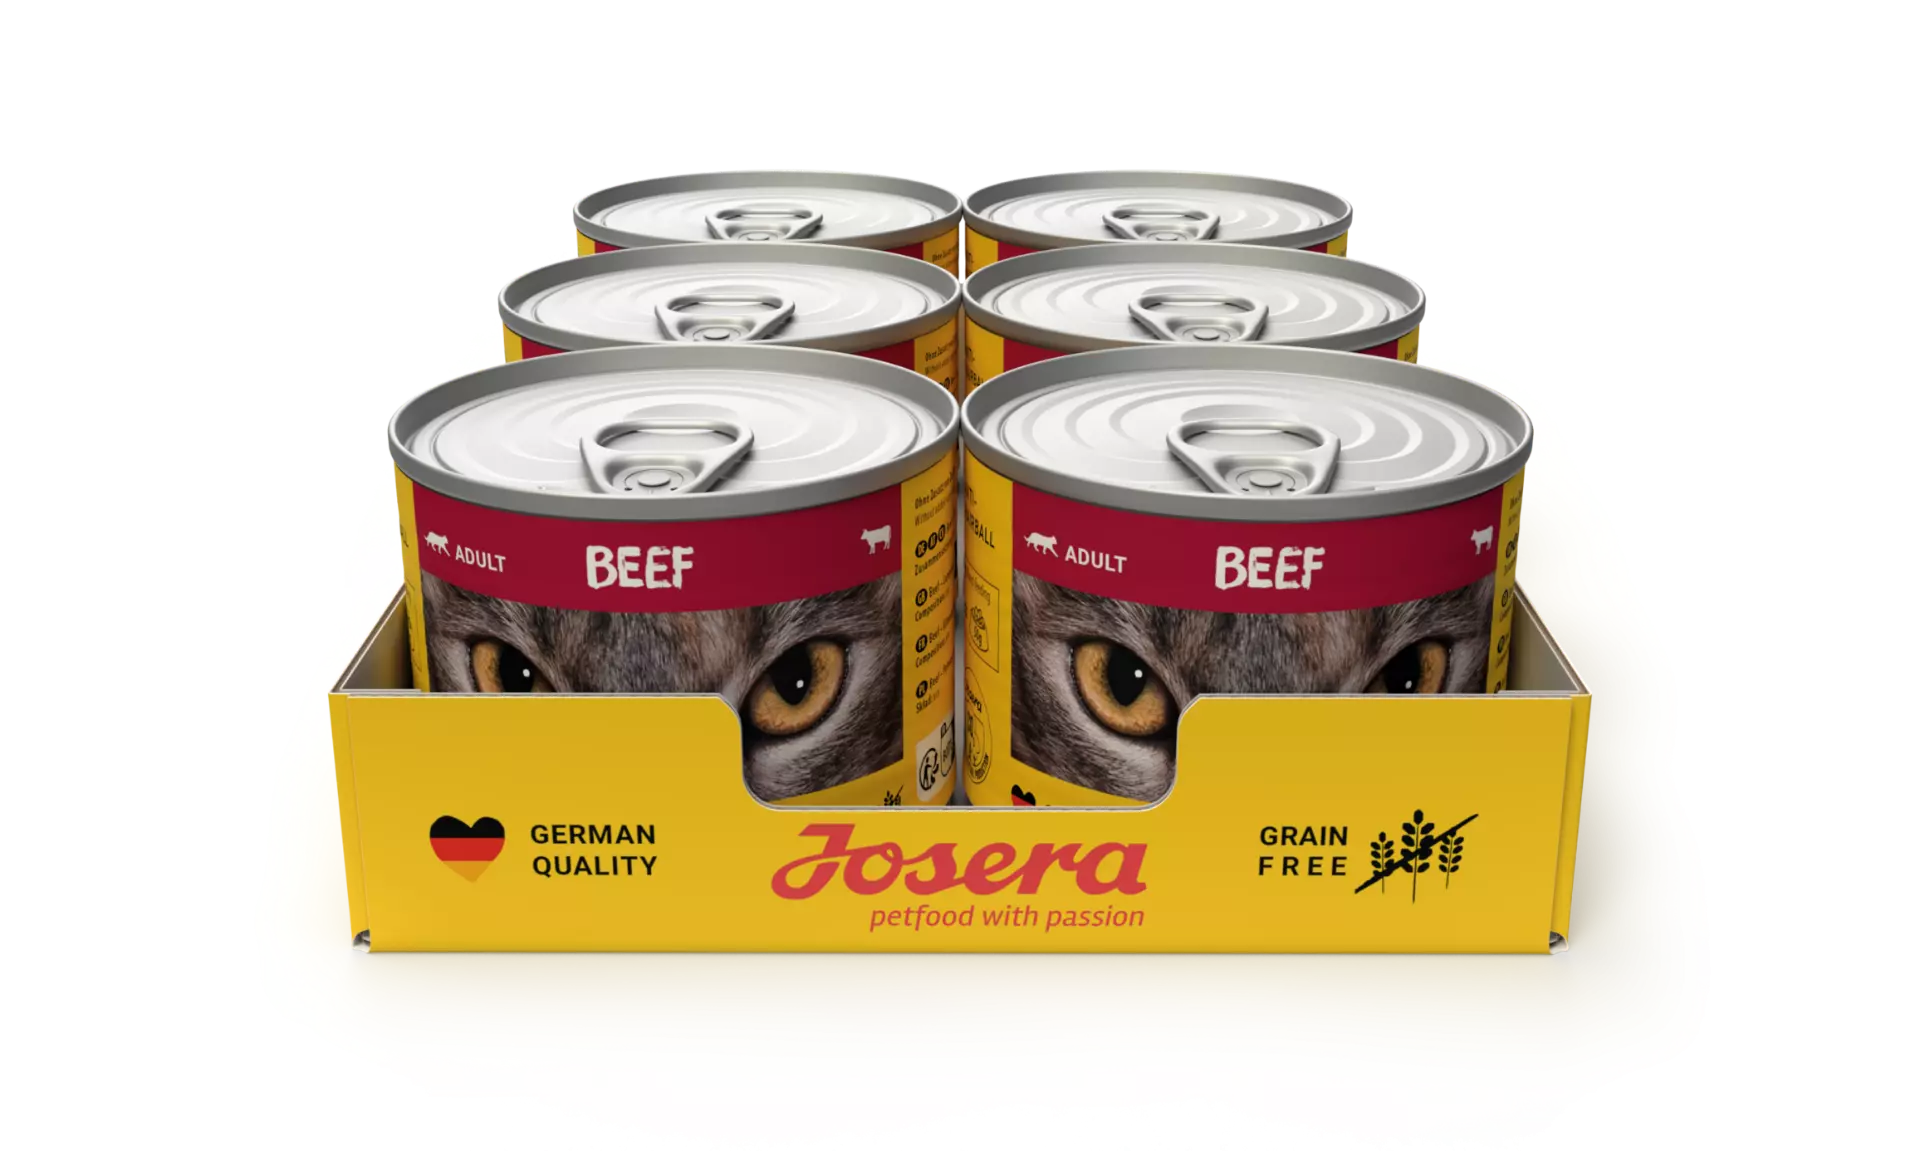 Josera Nassfutter Beef - Abwechslung im Anmarsch: Unser Nassfutter mit saftigem Rind für ausgewachsene Katzen 6x200g